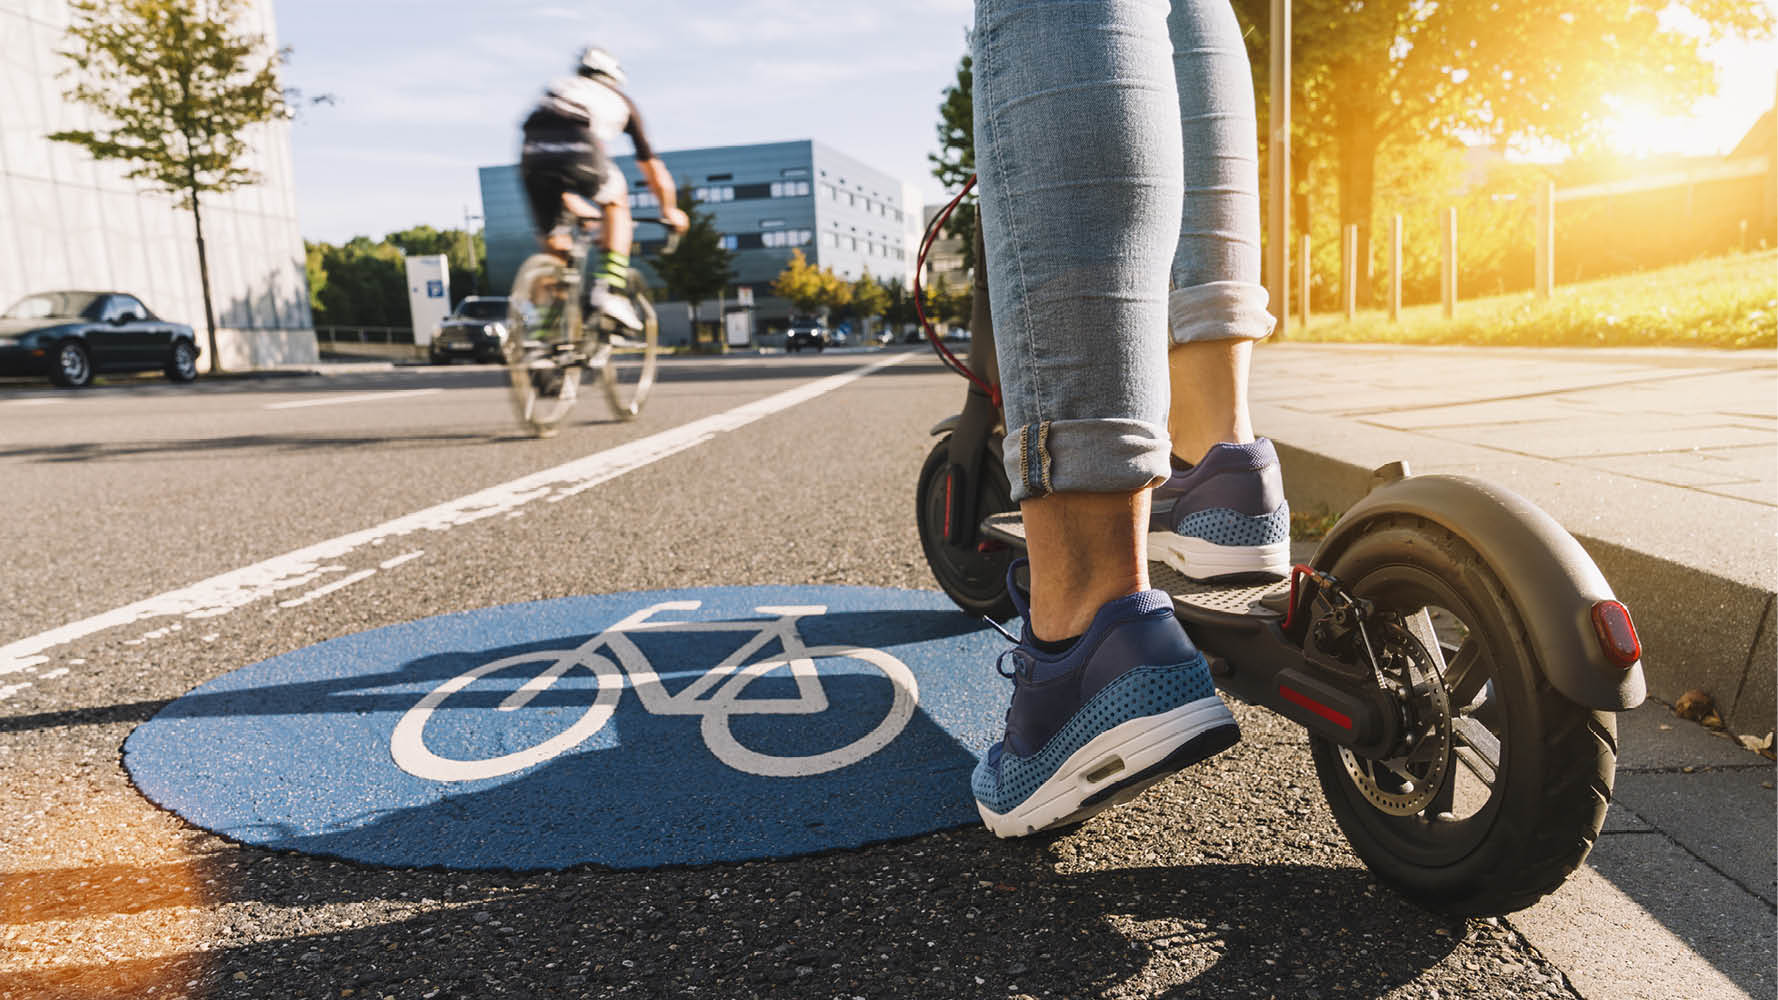 Två nya regler som berör alla som använder elsparkcyklar träder i kraft idag den 1 september 2022: Körförbud på gångbanor och trottoarer. Parkeringsförbud på gång-, cykelbanor och trottoarer. Bakgrunden är att antalet elsparkcyklar har ökat kraftigt i svenska städer de senaste åren vilket fått till följd att antalet olyckor där elsparcyklar varit inblandade har ökat....